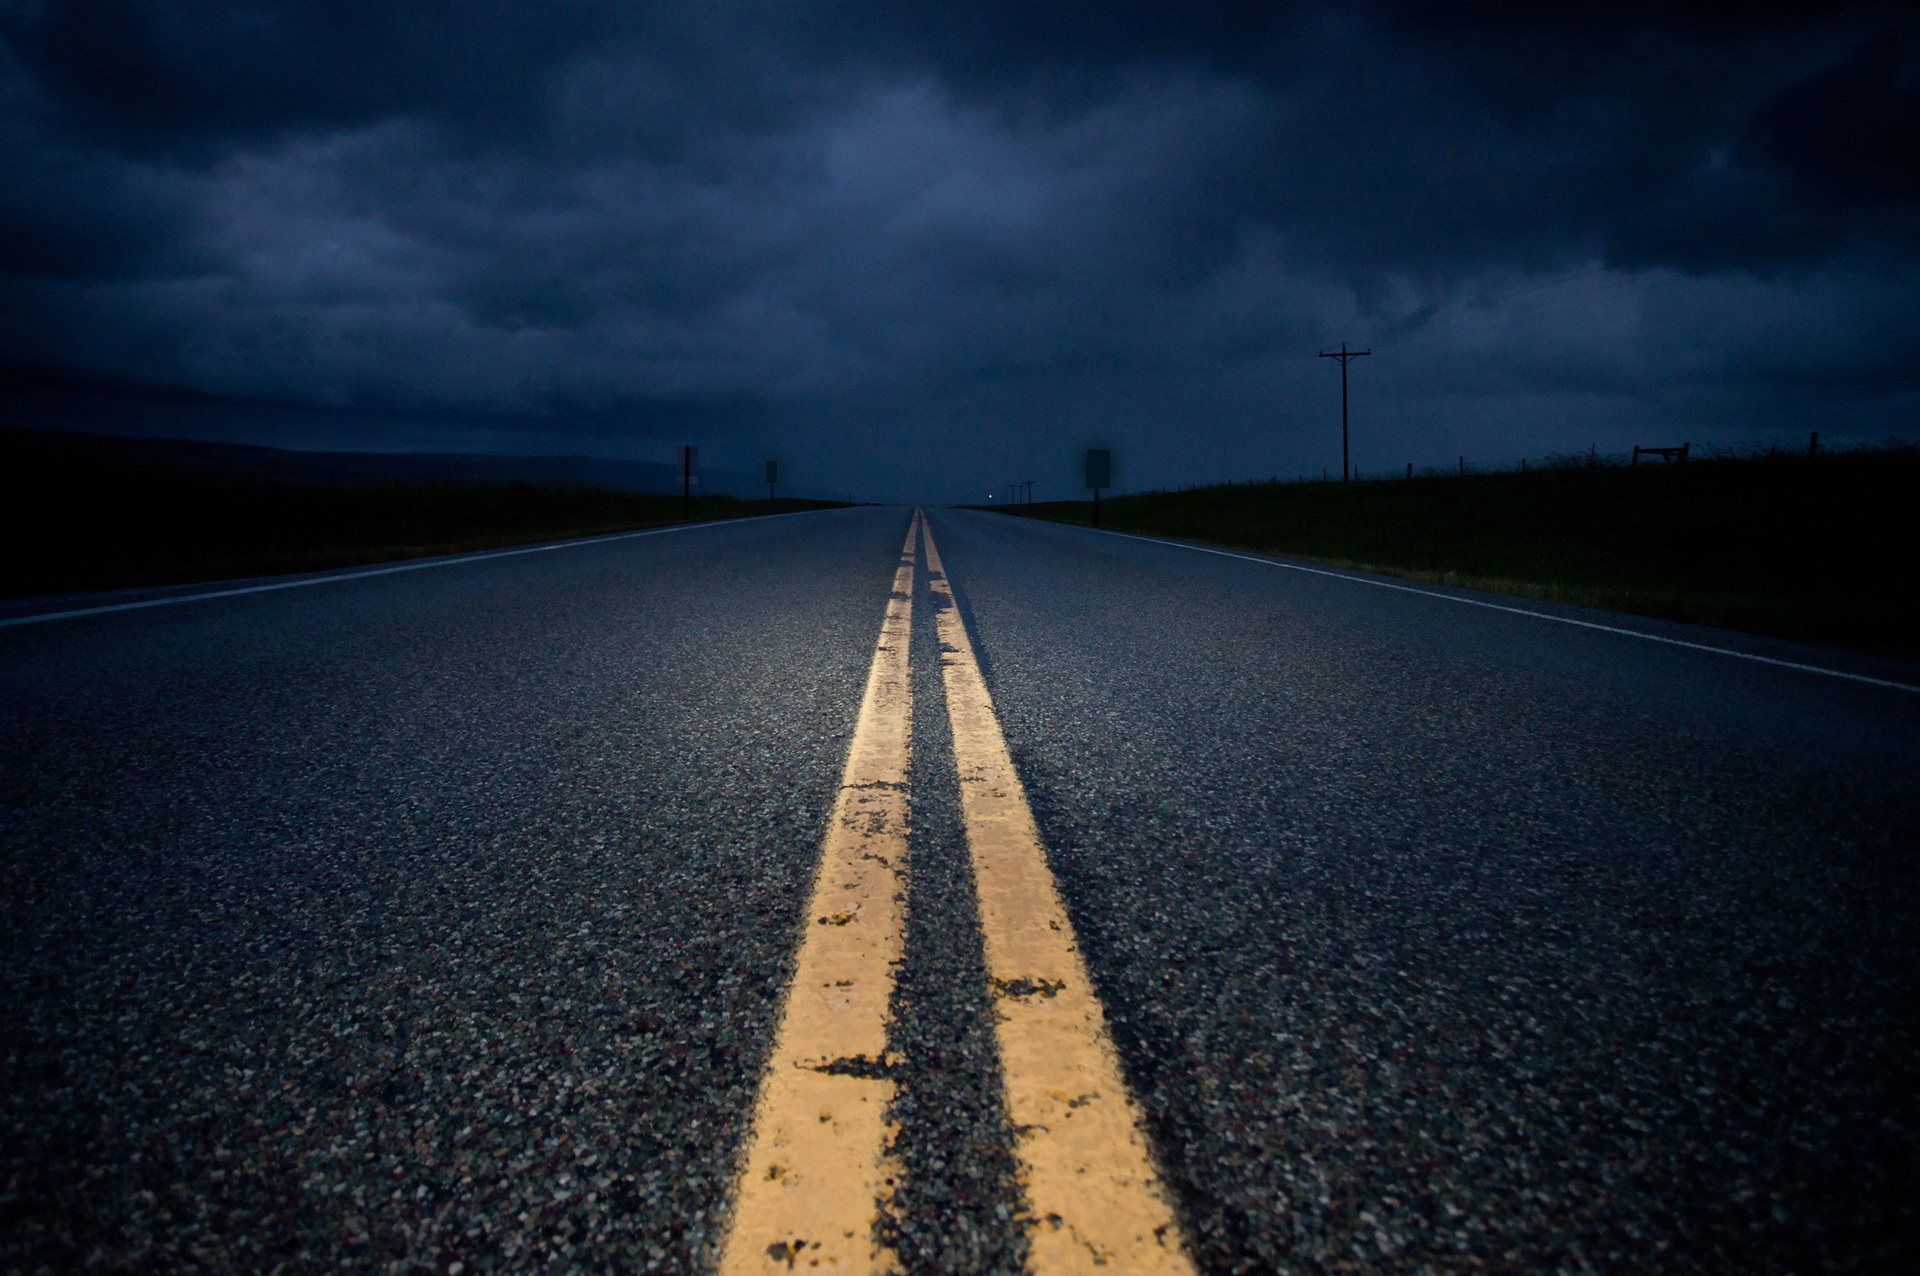 dark road ahead - EPautos - Libertarian Car Talk